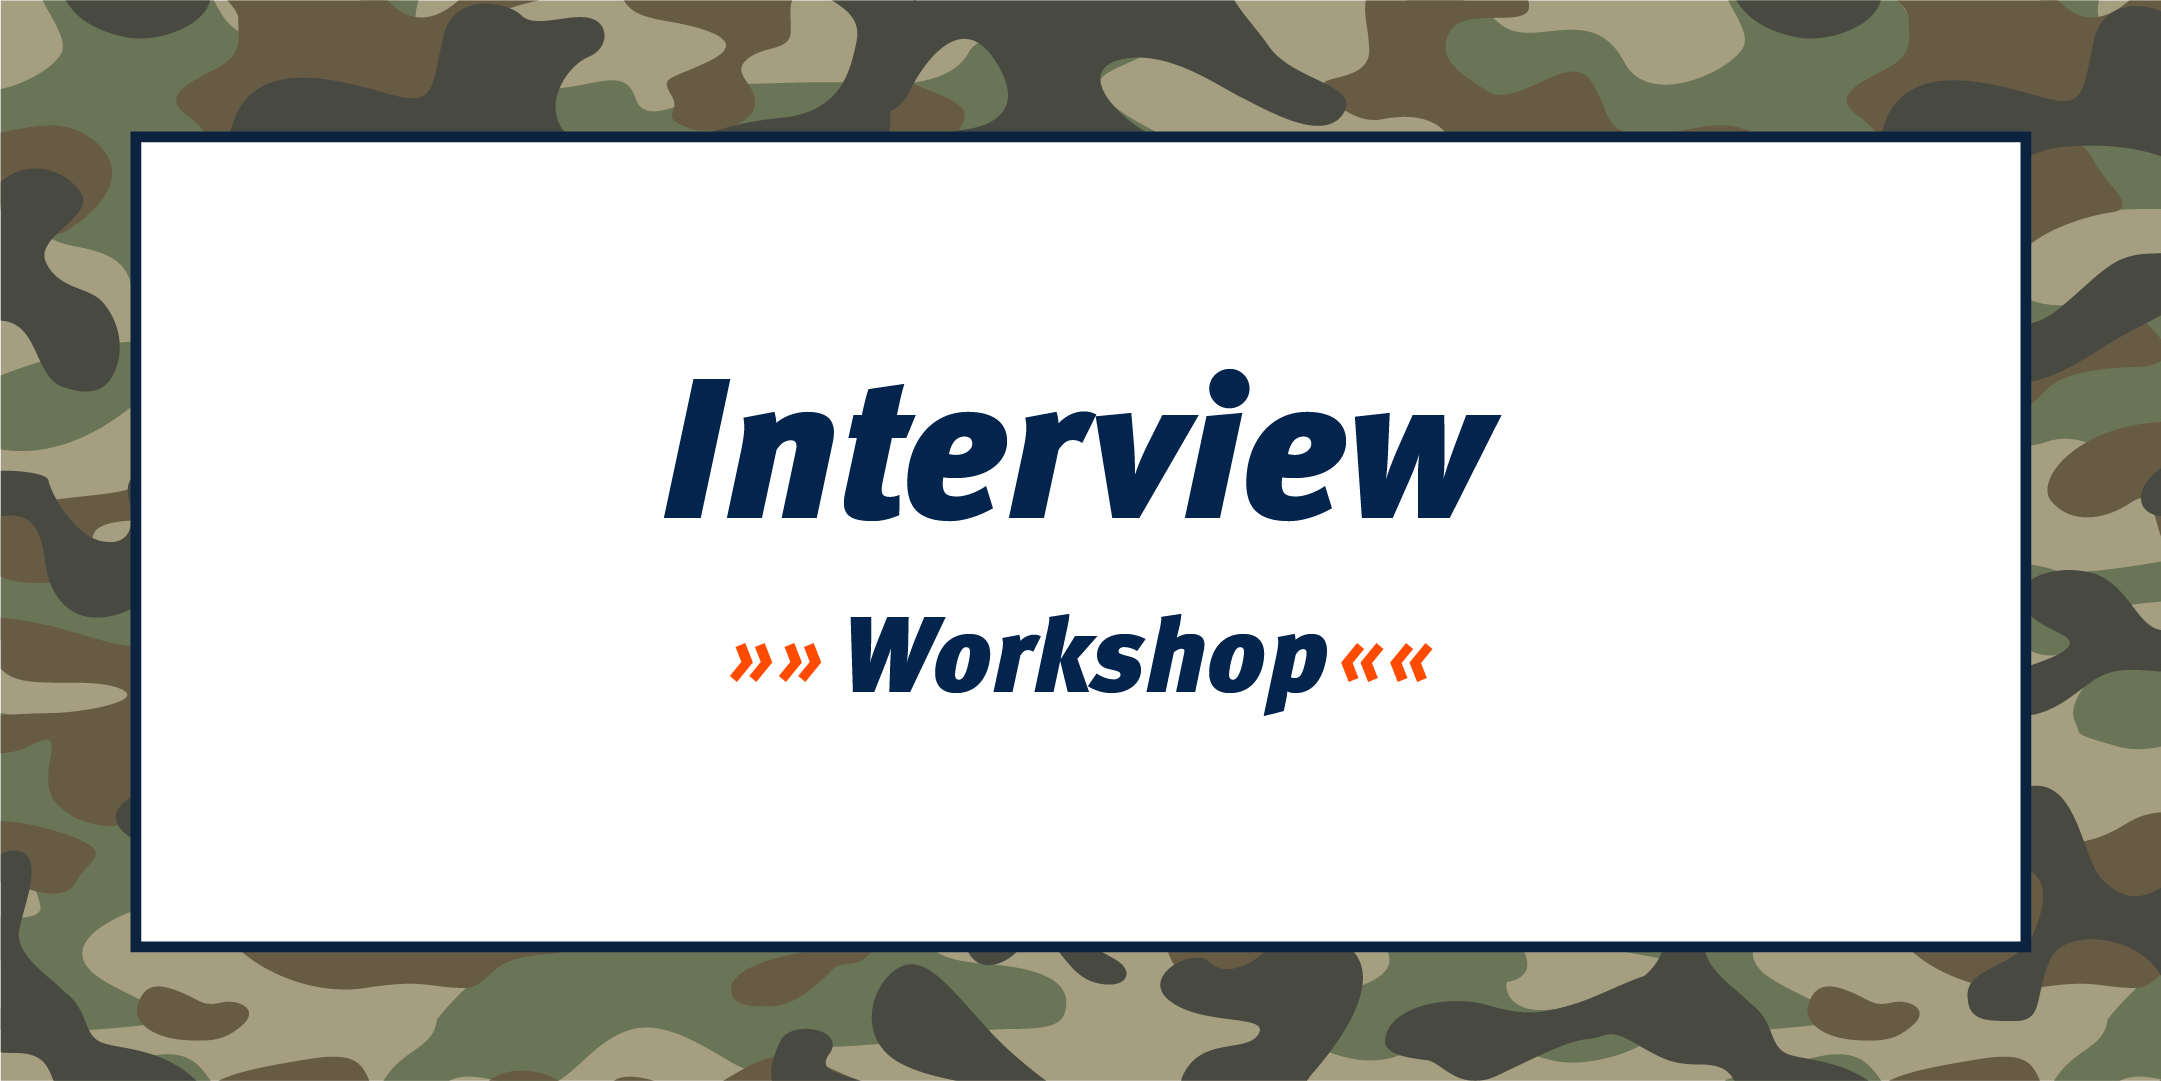 Interview Workshop